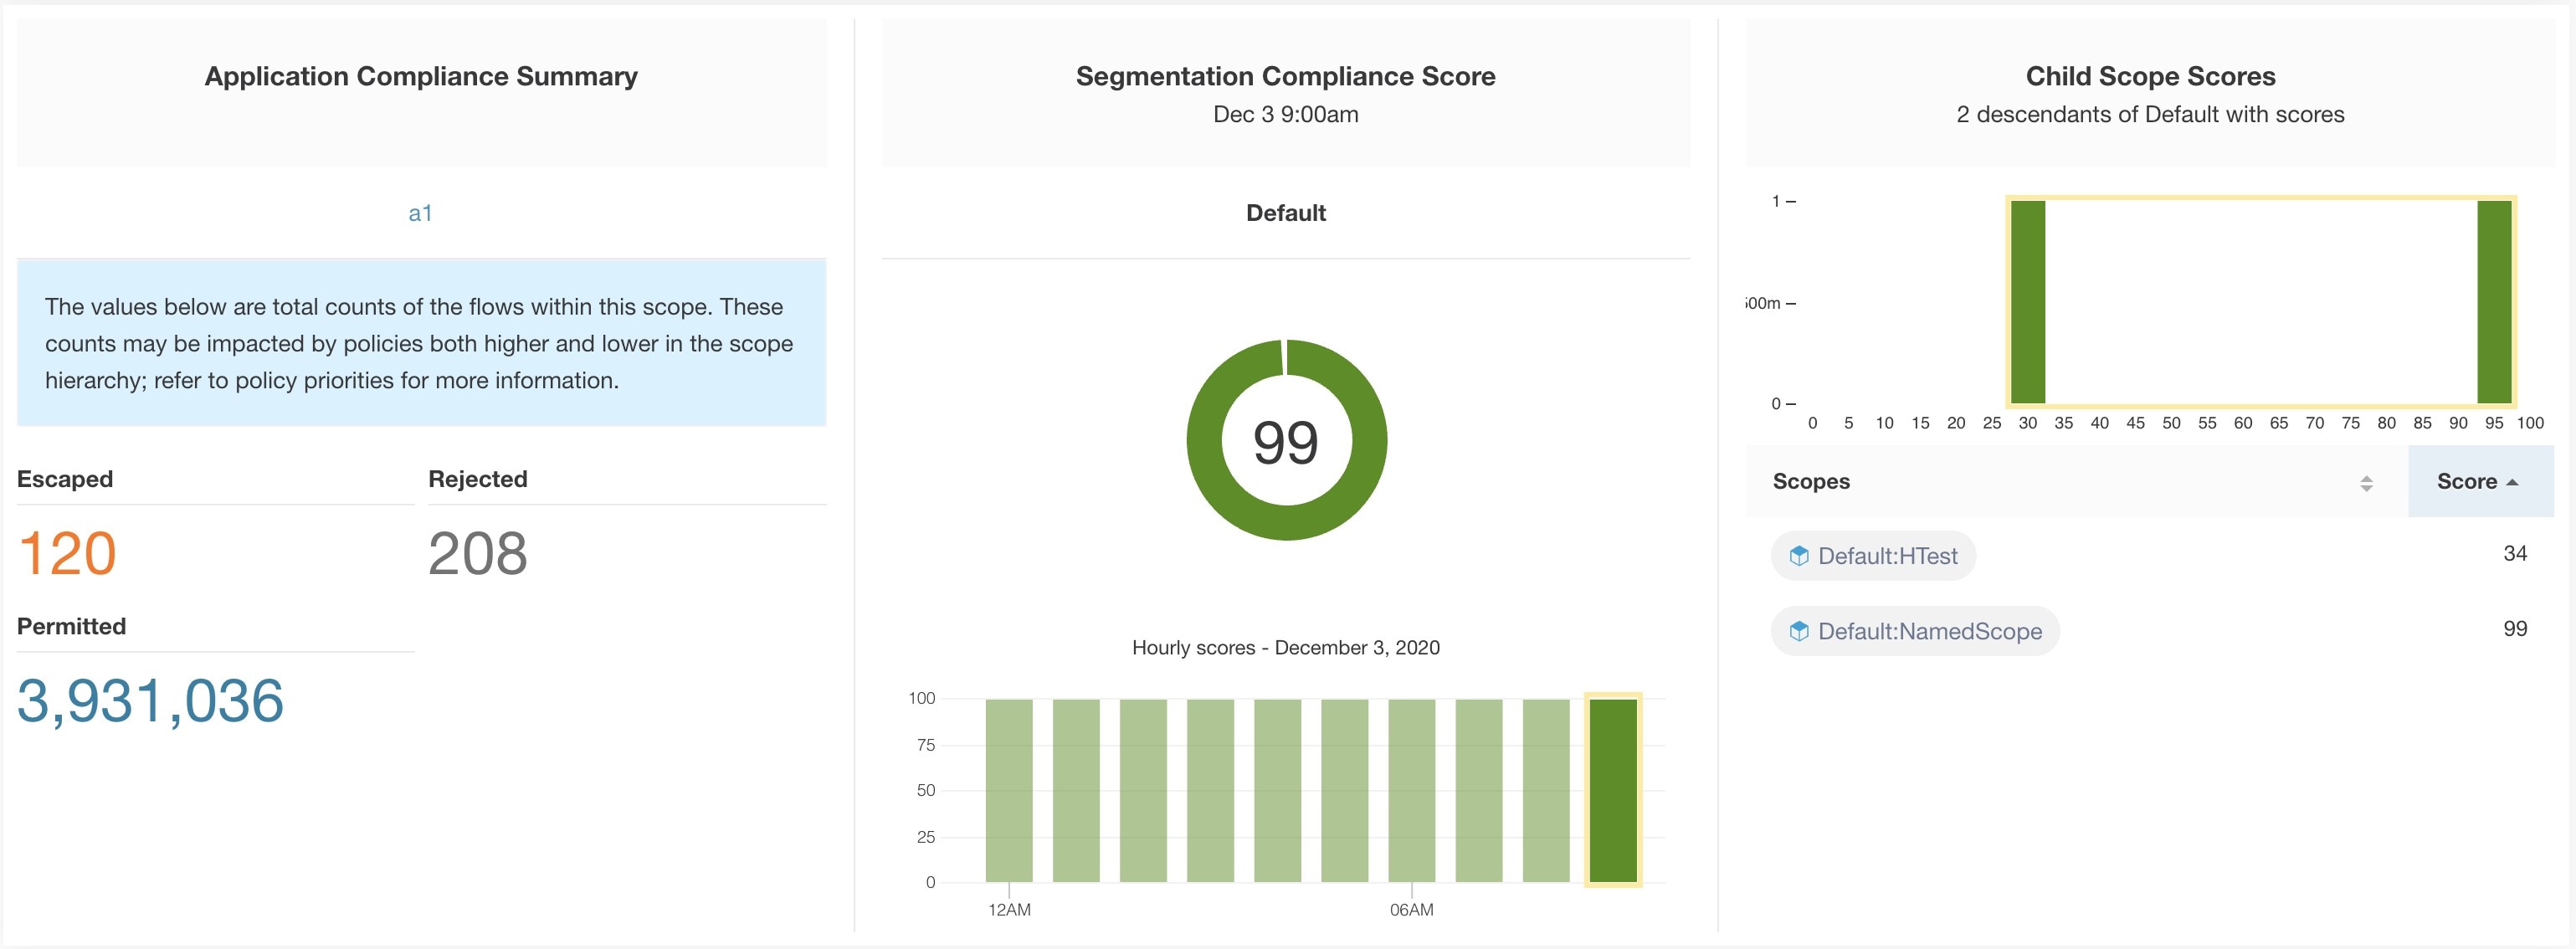 Segmentation Compliance Score Details